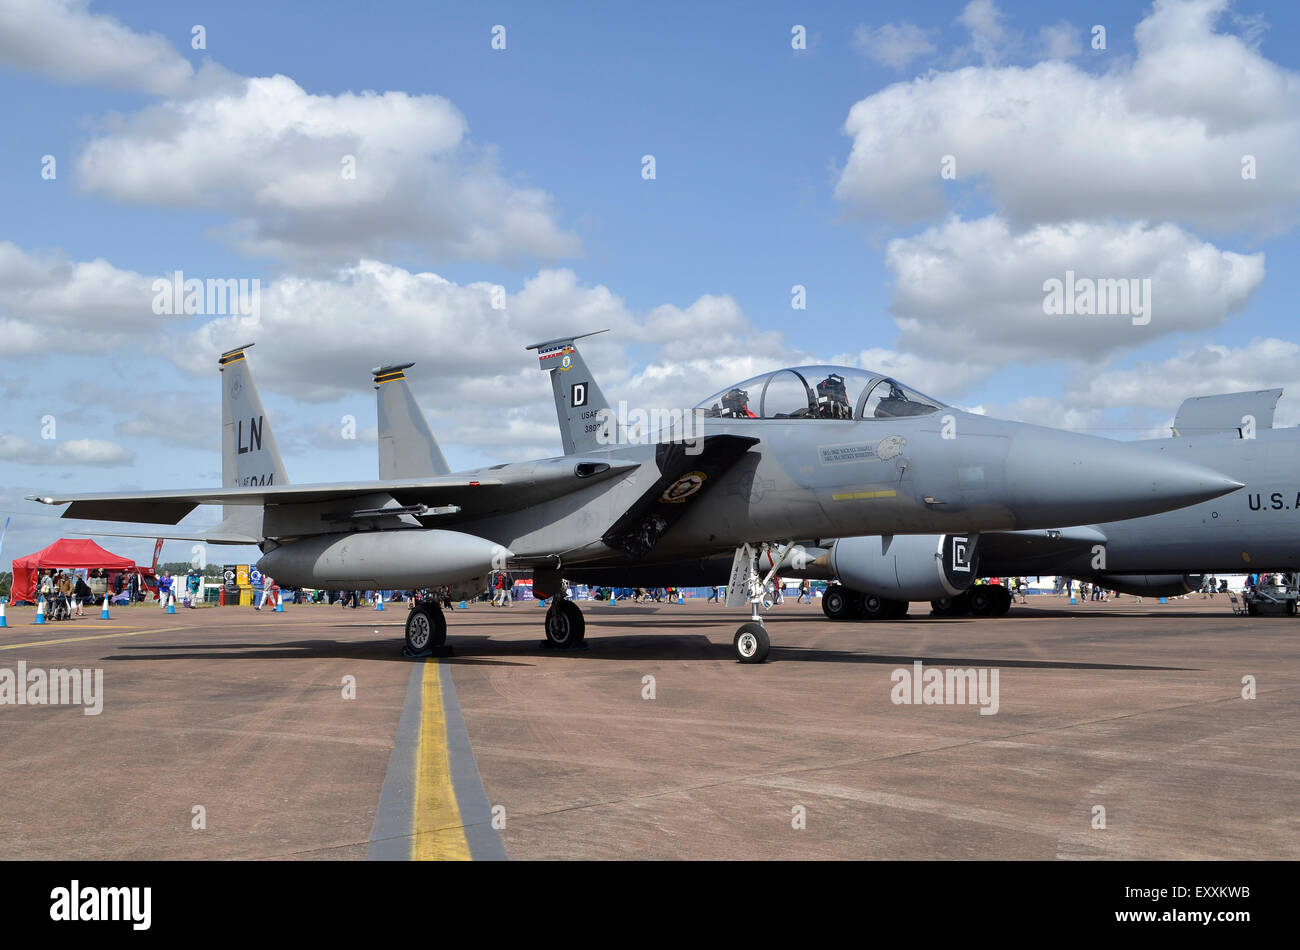 F-15C Eagle de l'US Air Force sur l'affichage à l'RIAT 2015, Fairford, UK. Crédit : Antony l'ortie/Alamy Live News Banque D'Images